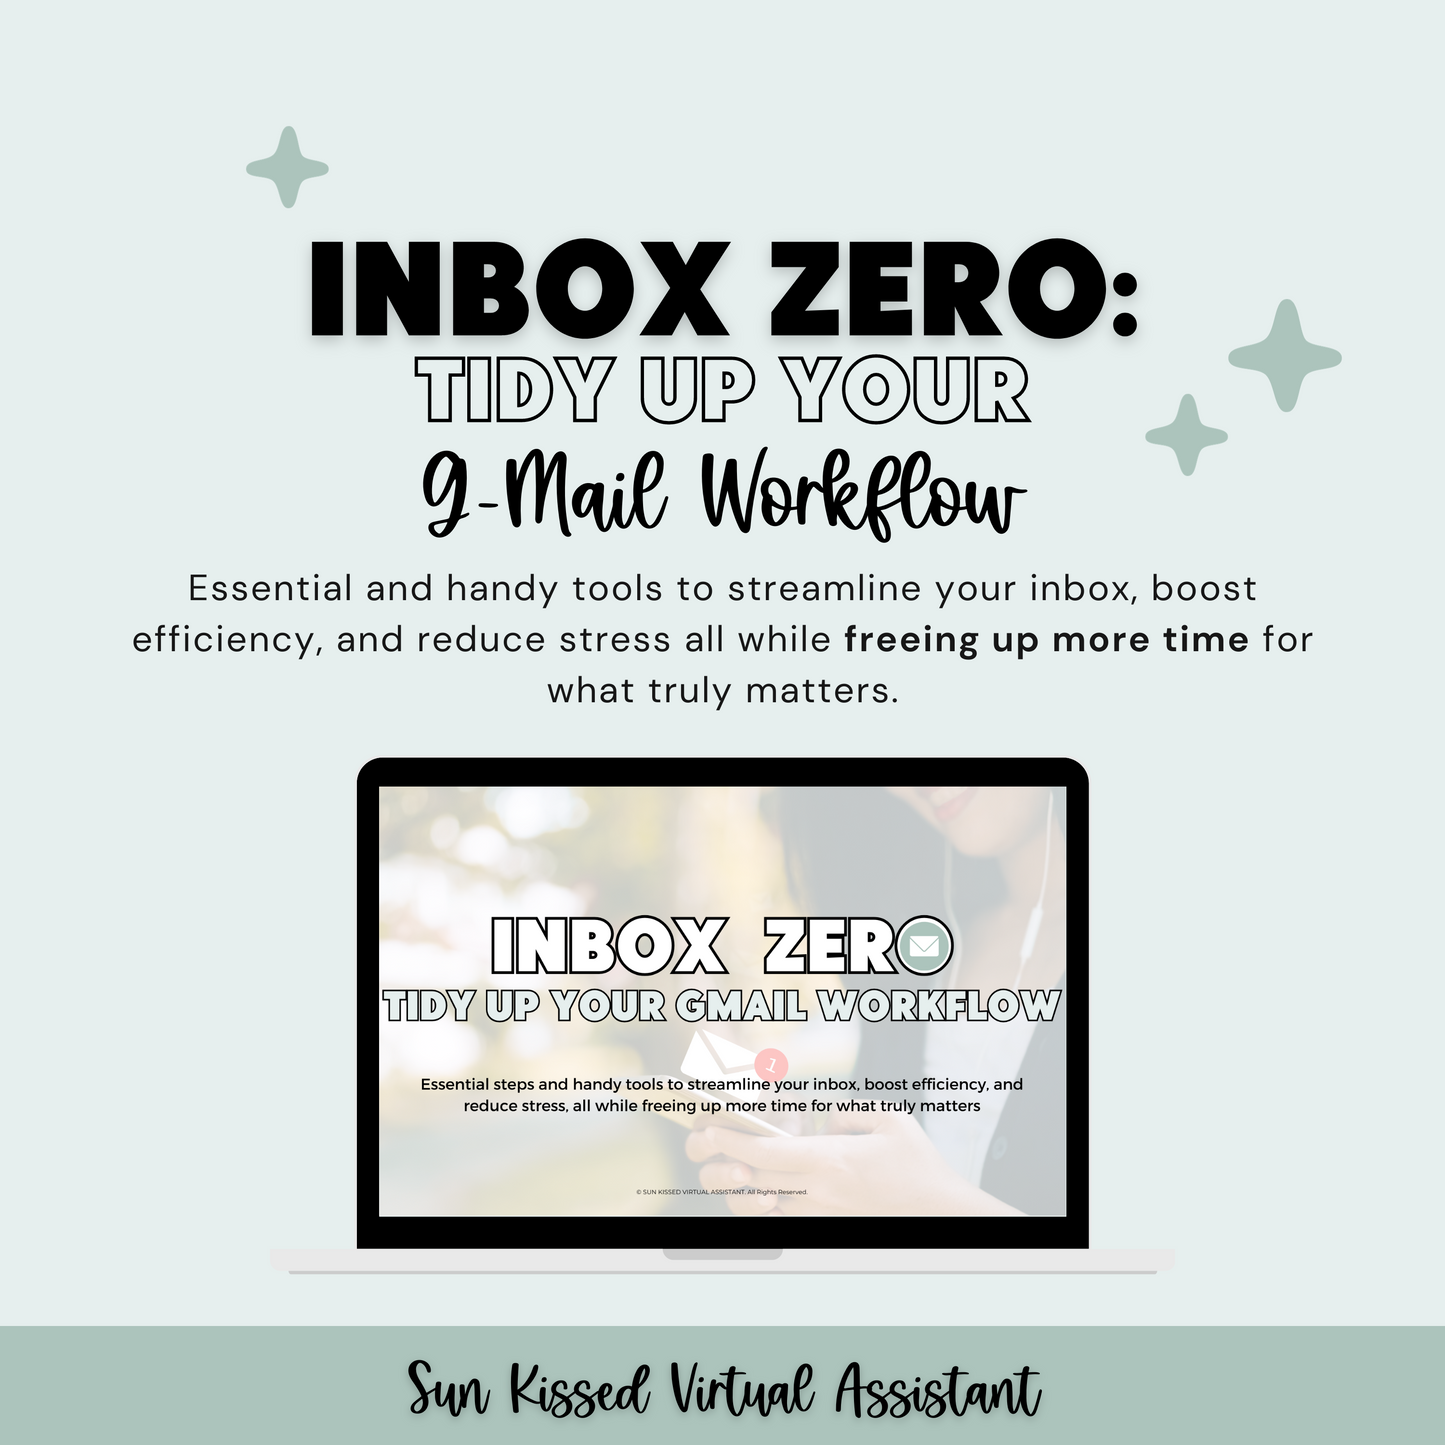 Inbox Zero: Tidy Up Your Gmail Workflow